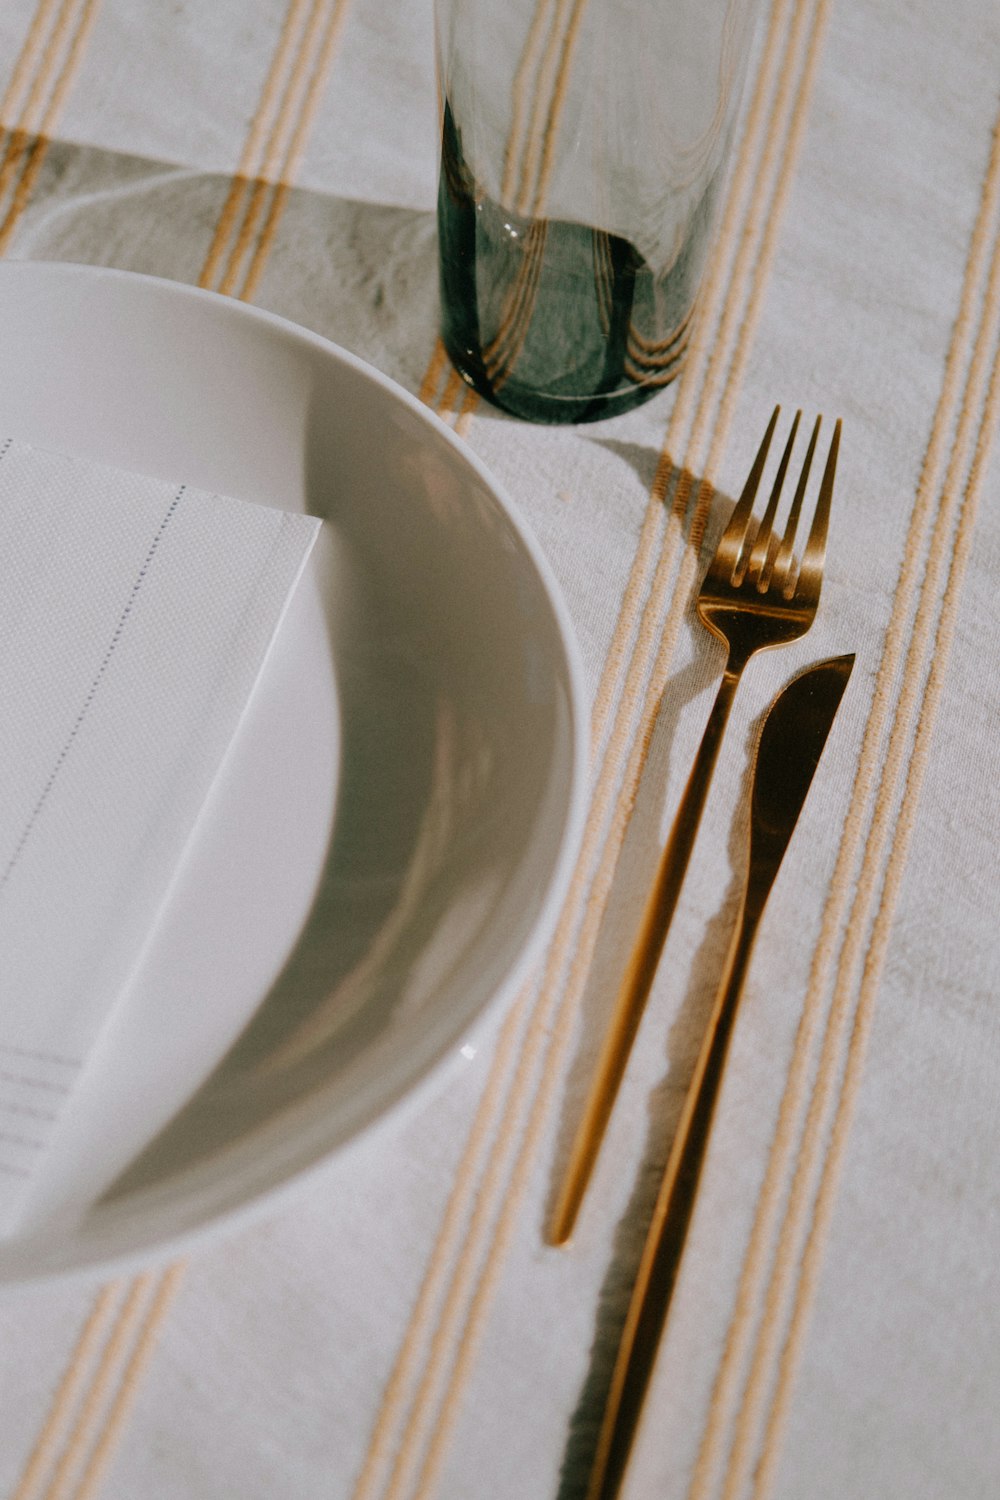 テーブルの上にフォークとナイフが付いた白い皿